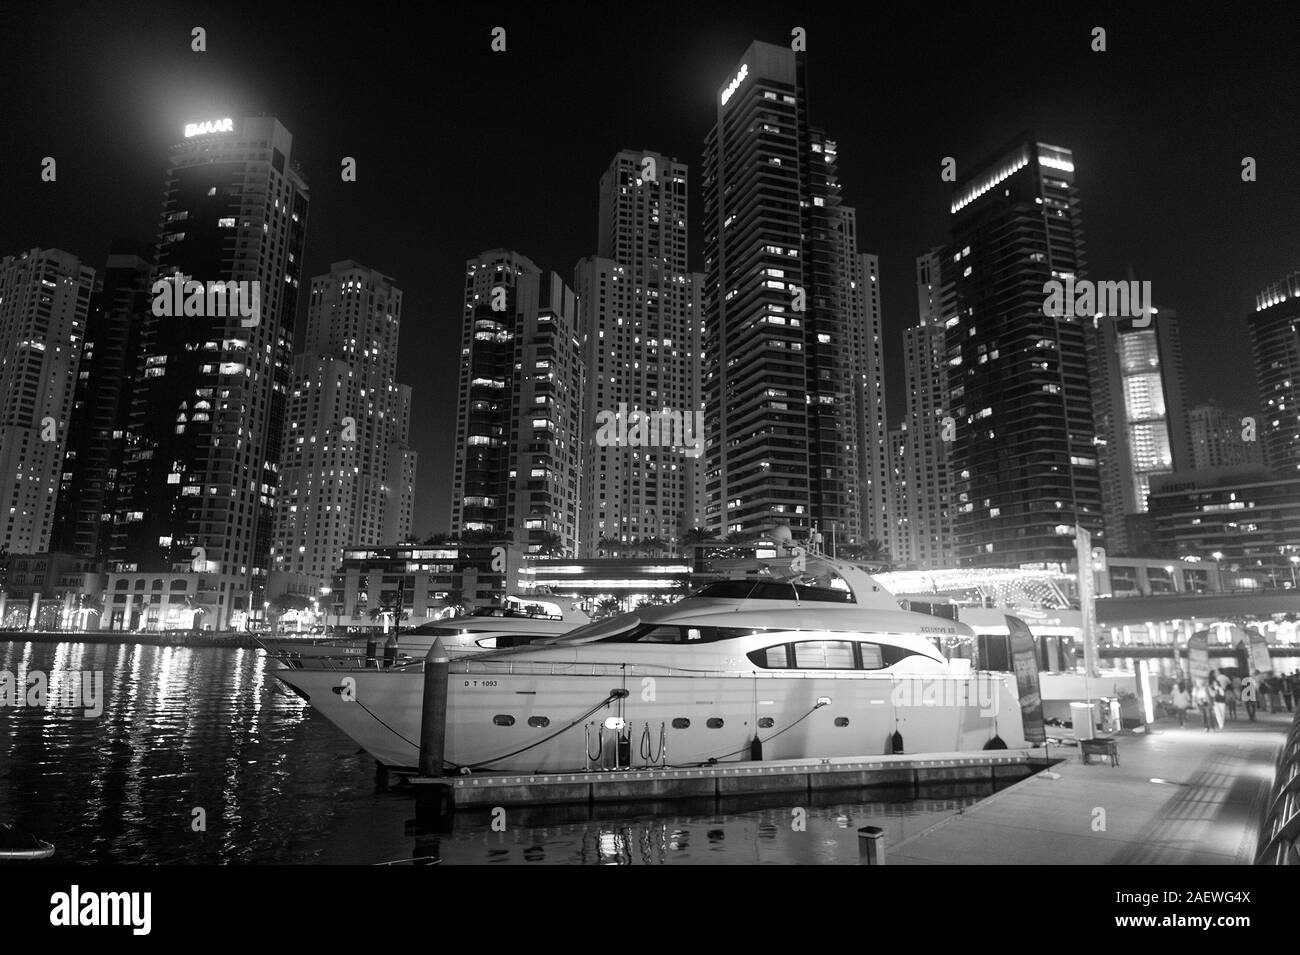 Dubai, Vereinigte Arabische Emirate - Dezember 26, 2017: Yacht Club in Dubai Marina District in der Nacht. Yacht Boot auf Skyline mit Beleuchtung. Wasser, Verkehr und Transport. Reisen oder reise und reise. Stockfoto